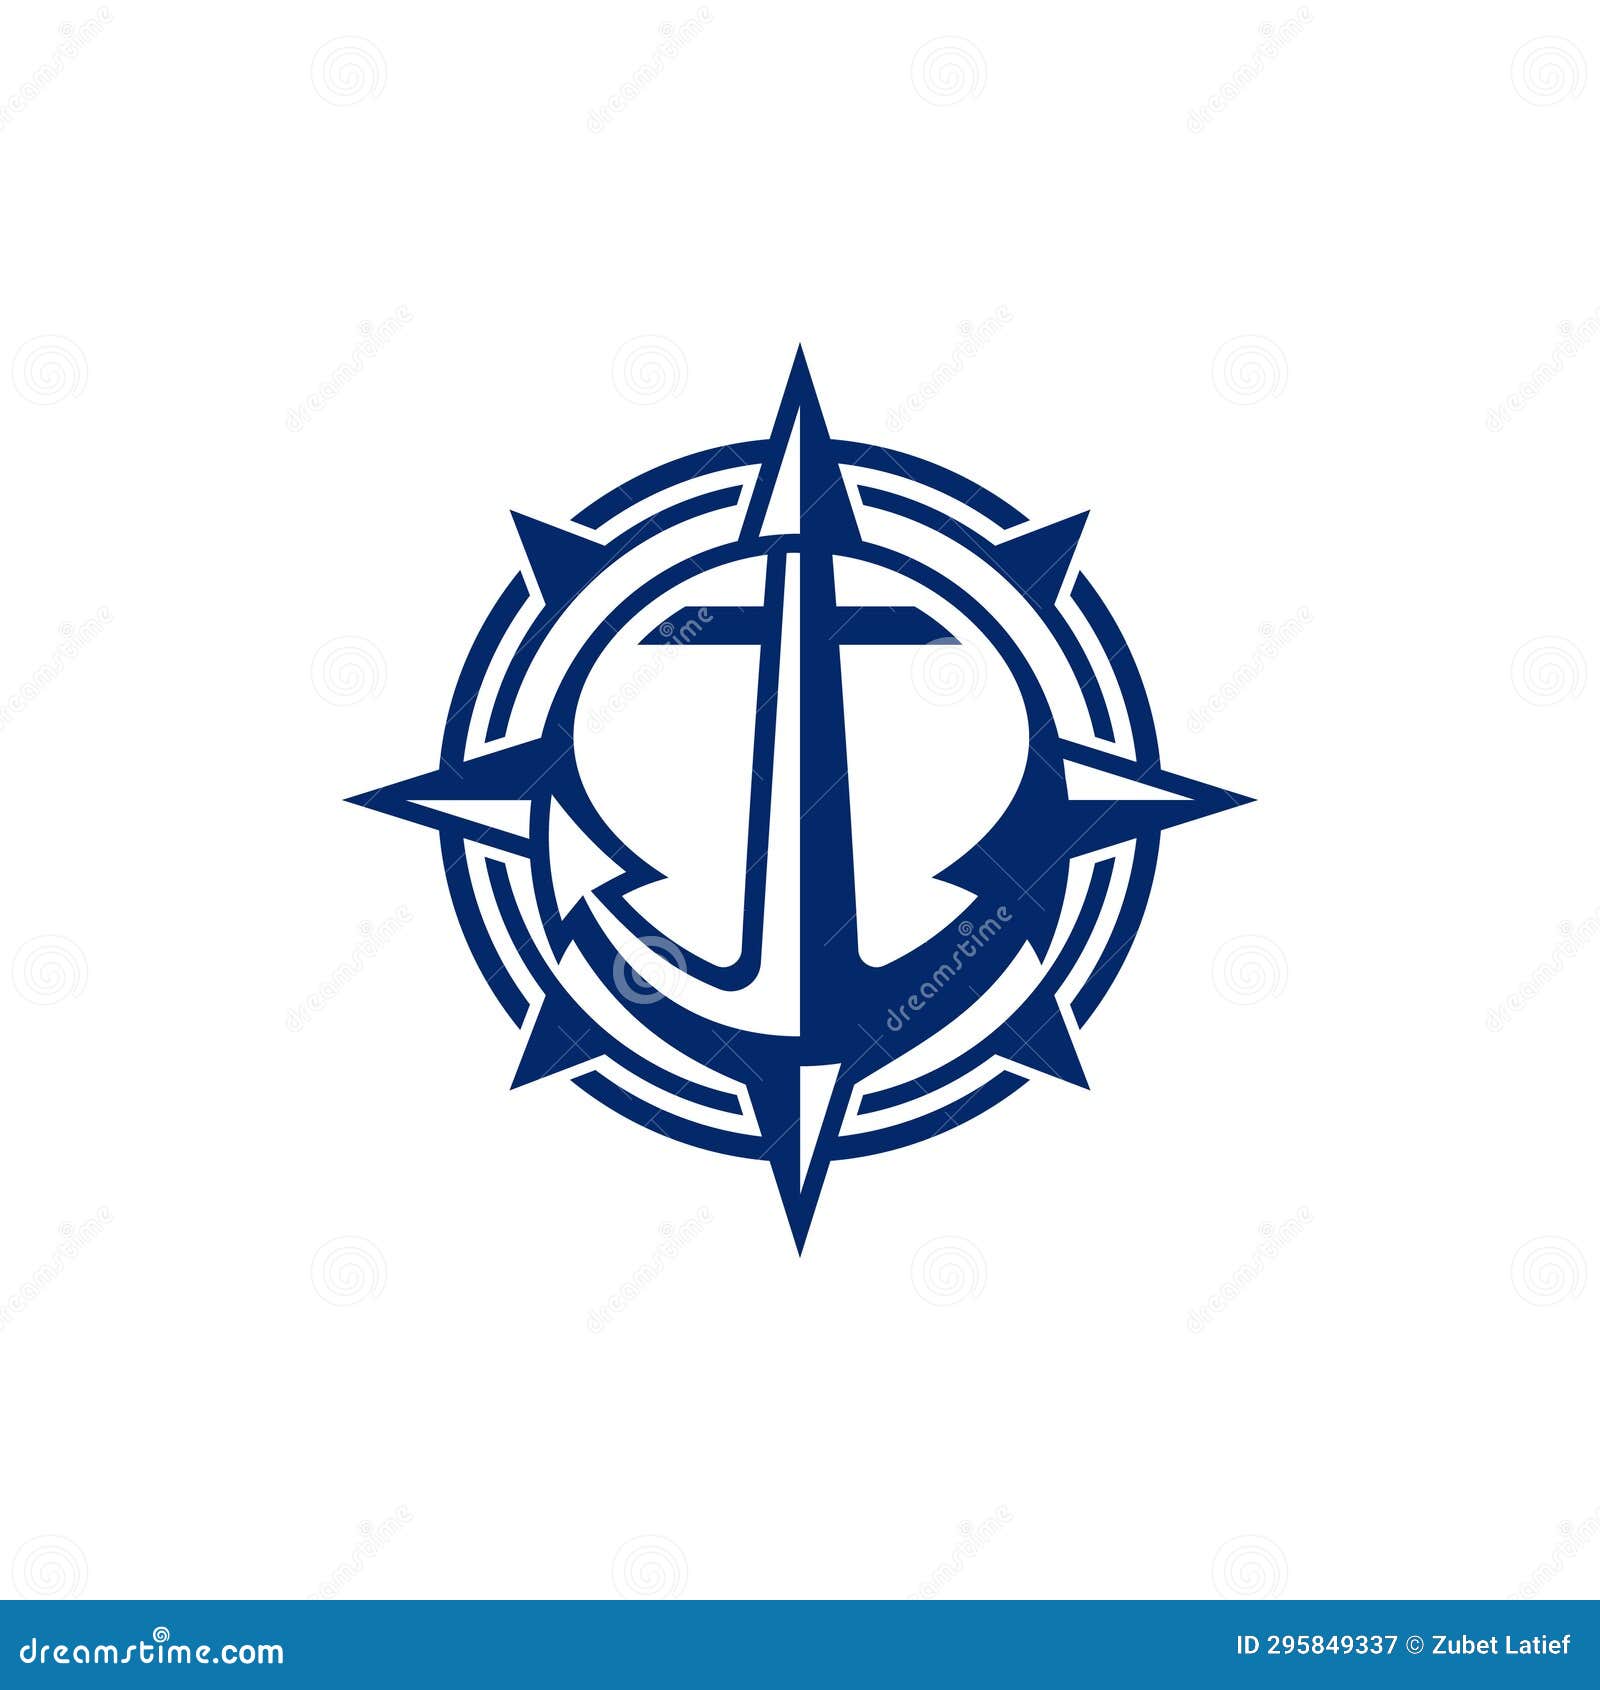 Compass with Heavy Anchor Modern Creative Logo Stock Vector ...